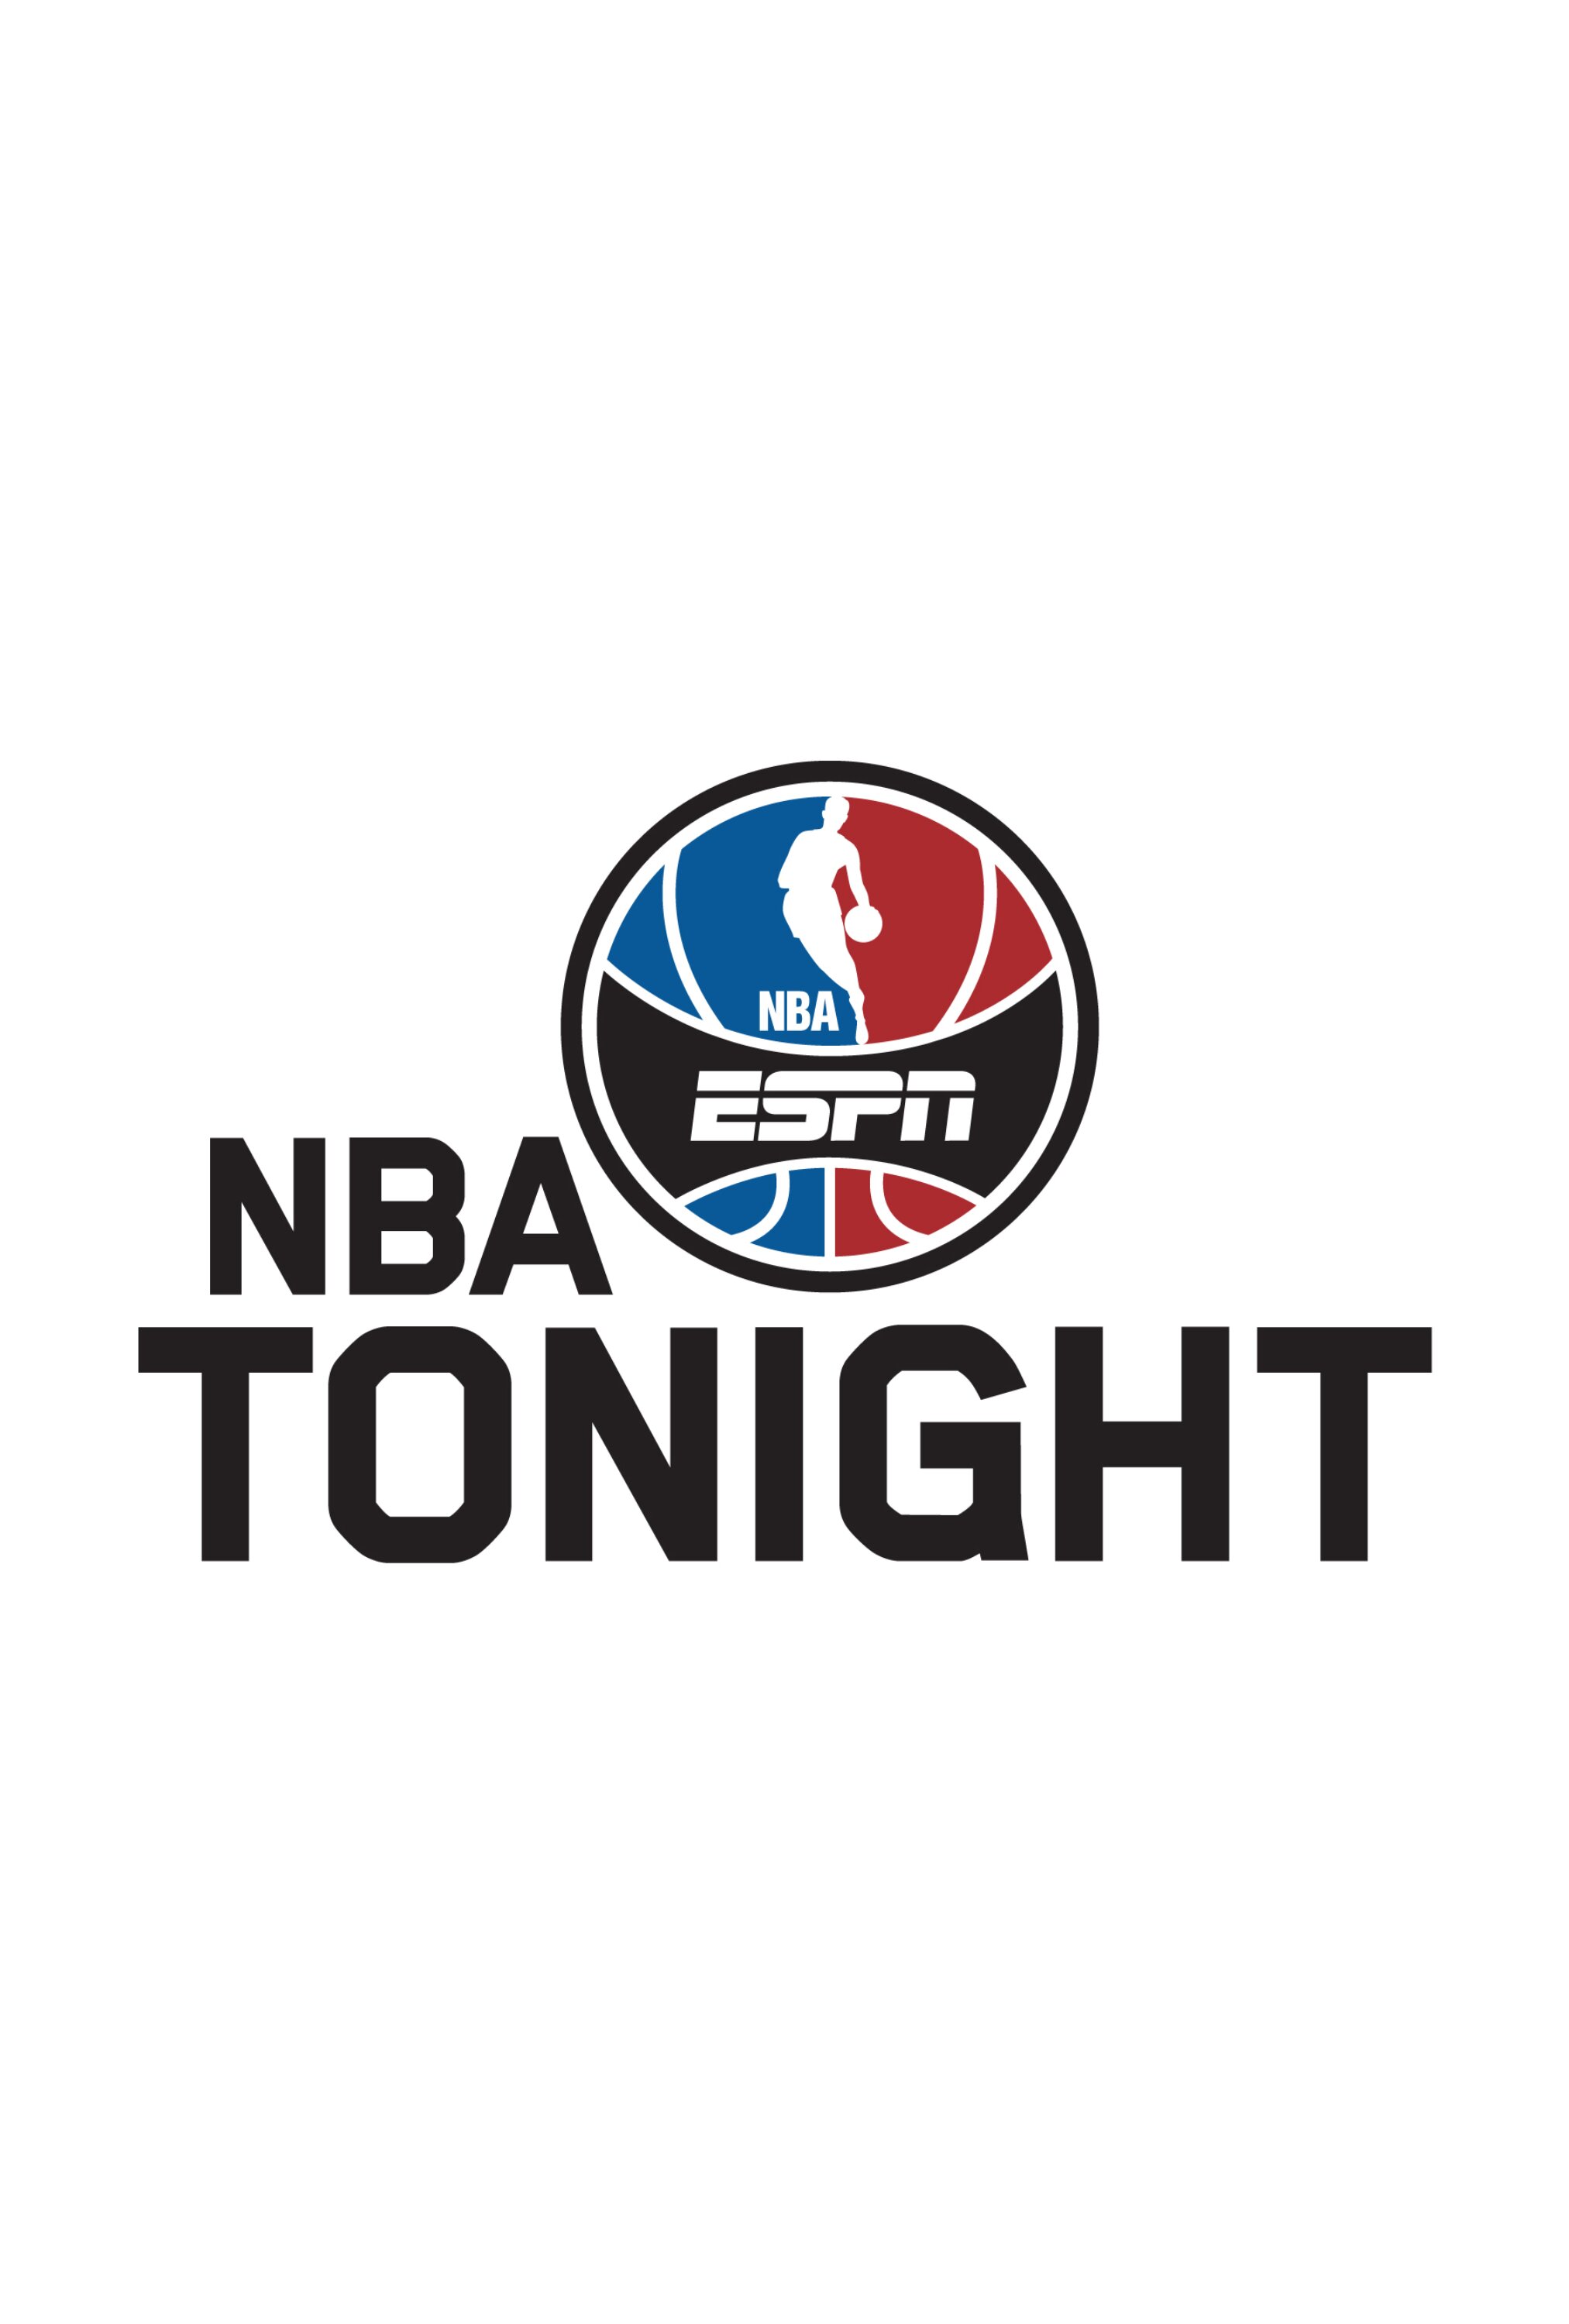 NBA Tonight ne zaman